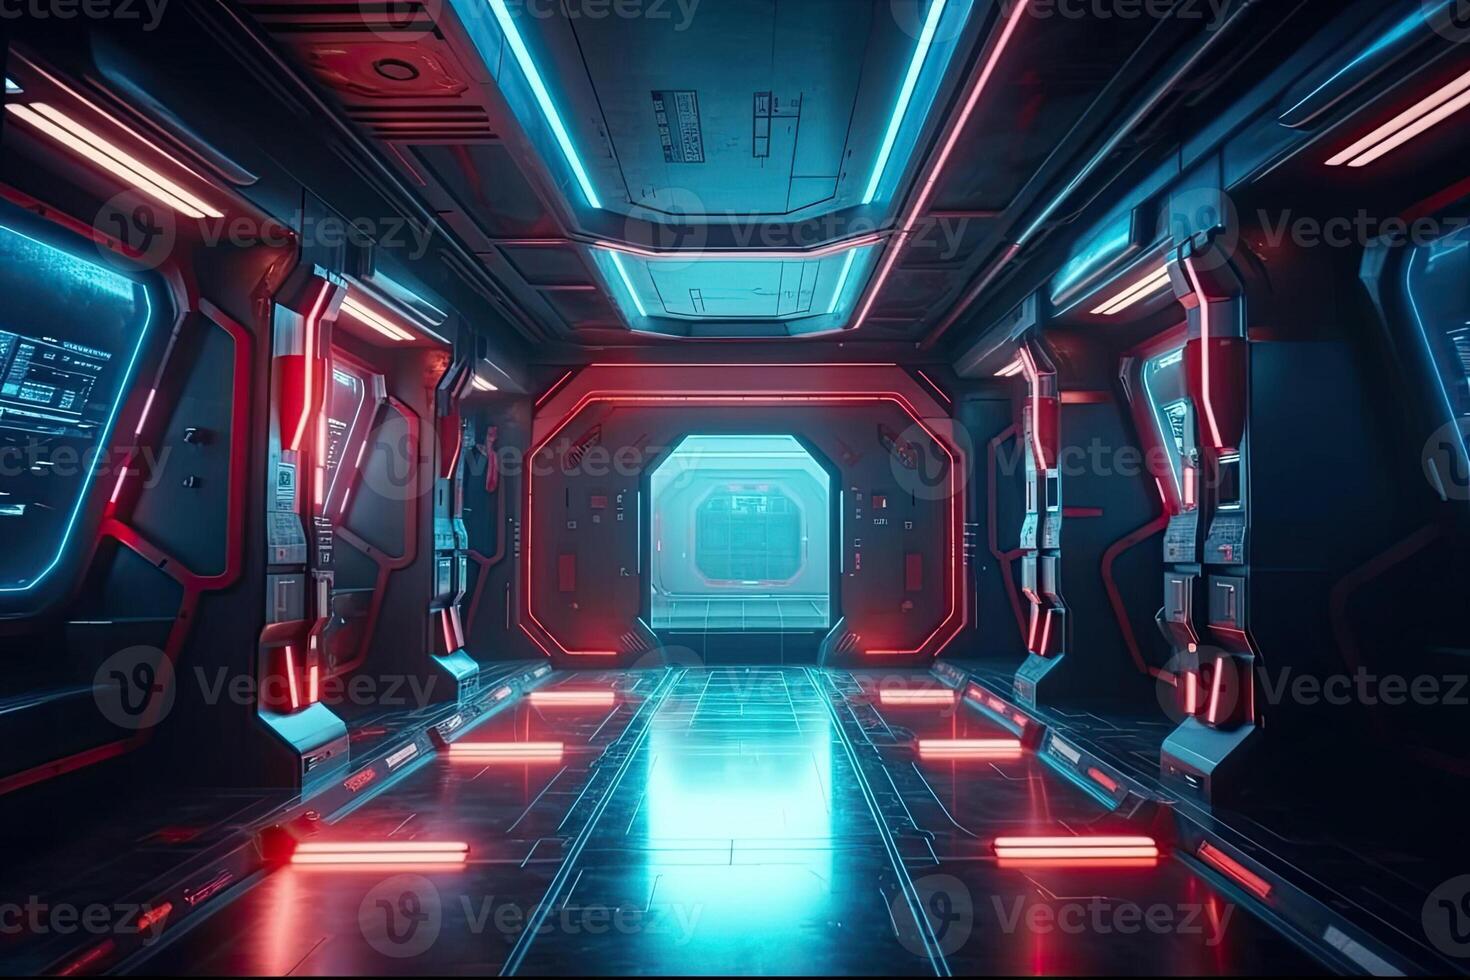 futurista corredor corredor túnel com néon claro. oi-tech ficção científica passagem nave espacial fundo ai gerado foto